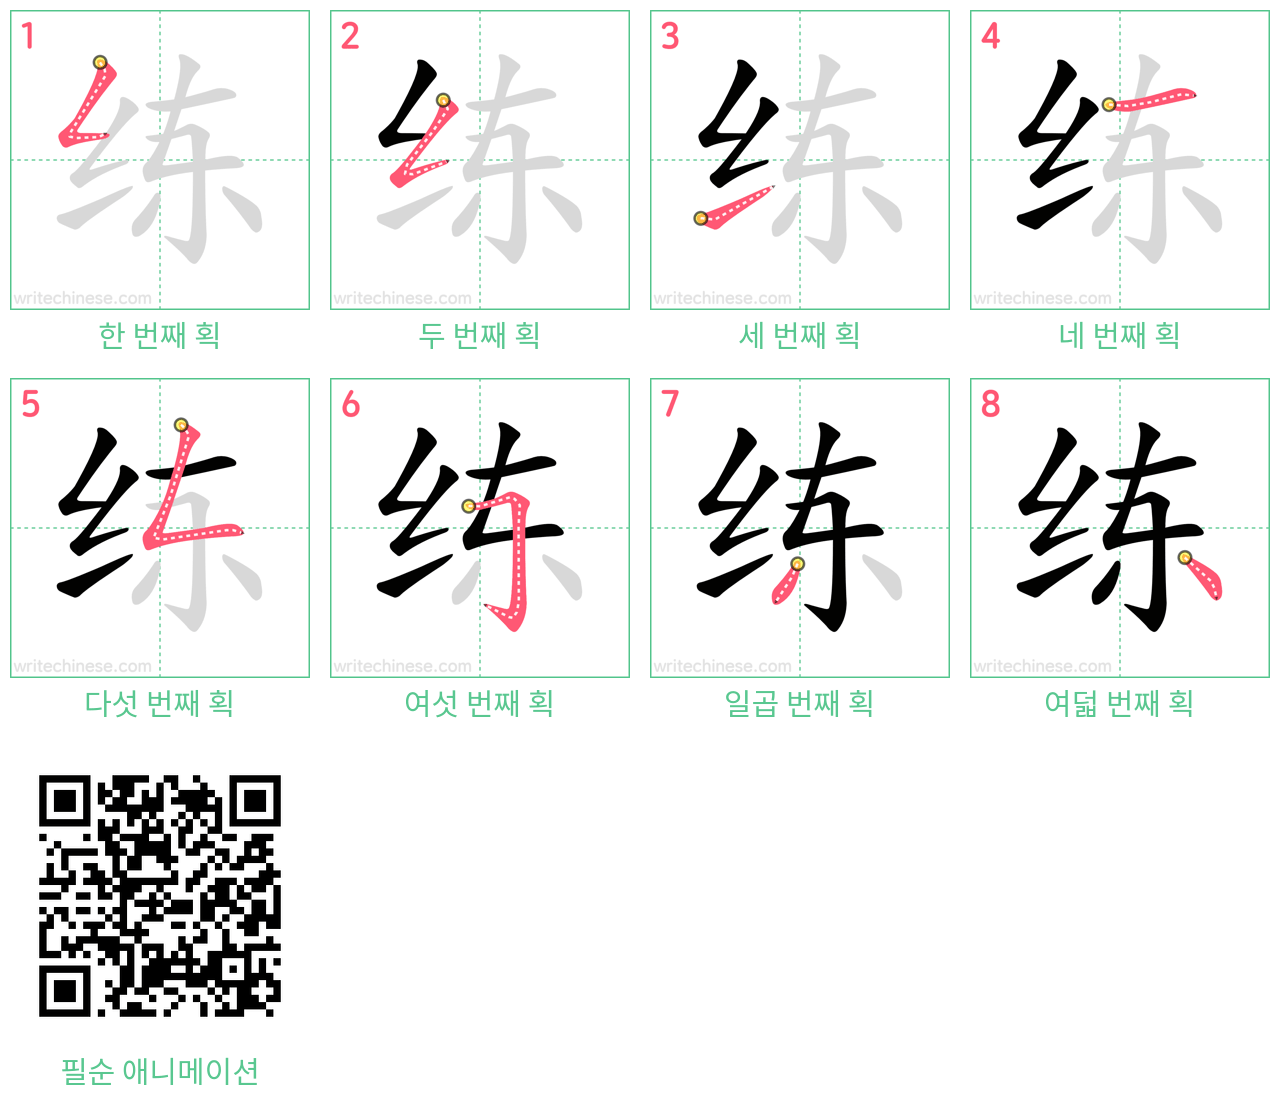 练 step-by-step stroke order diagrams